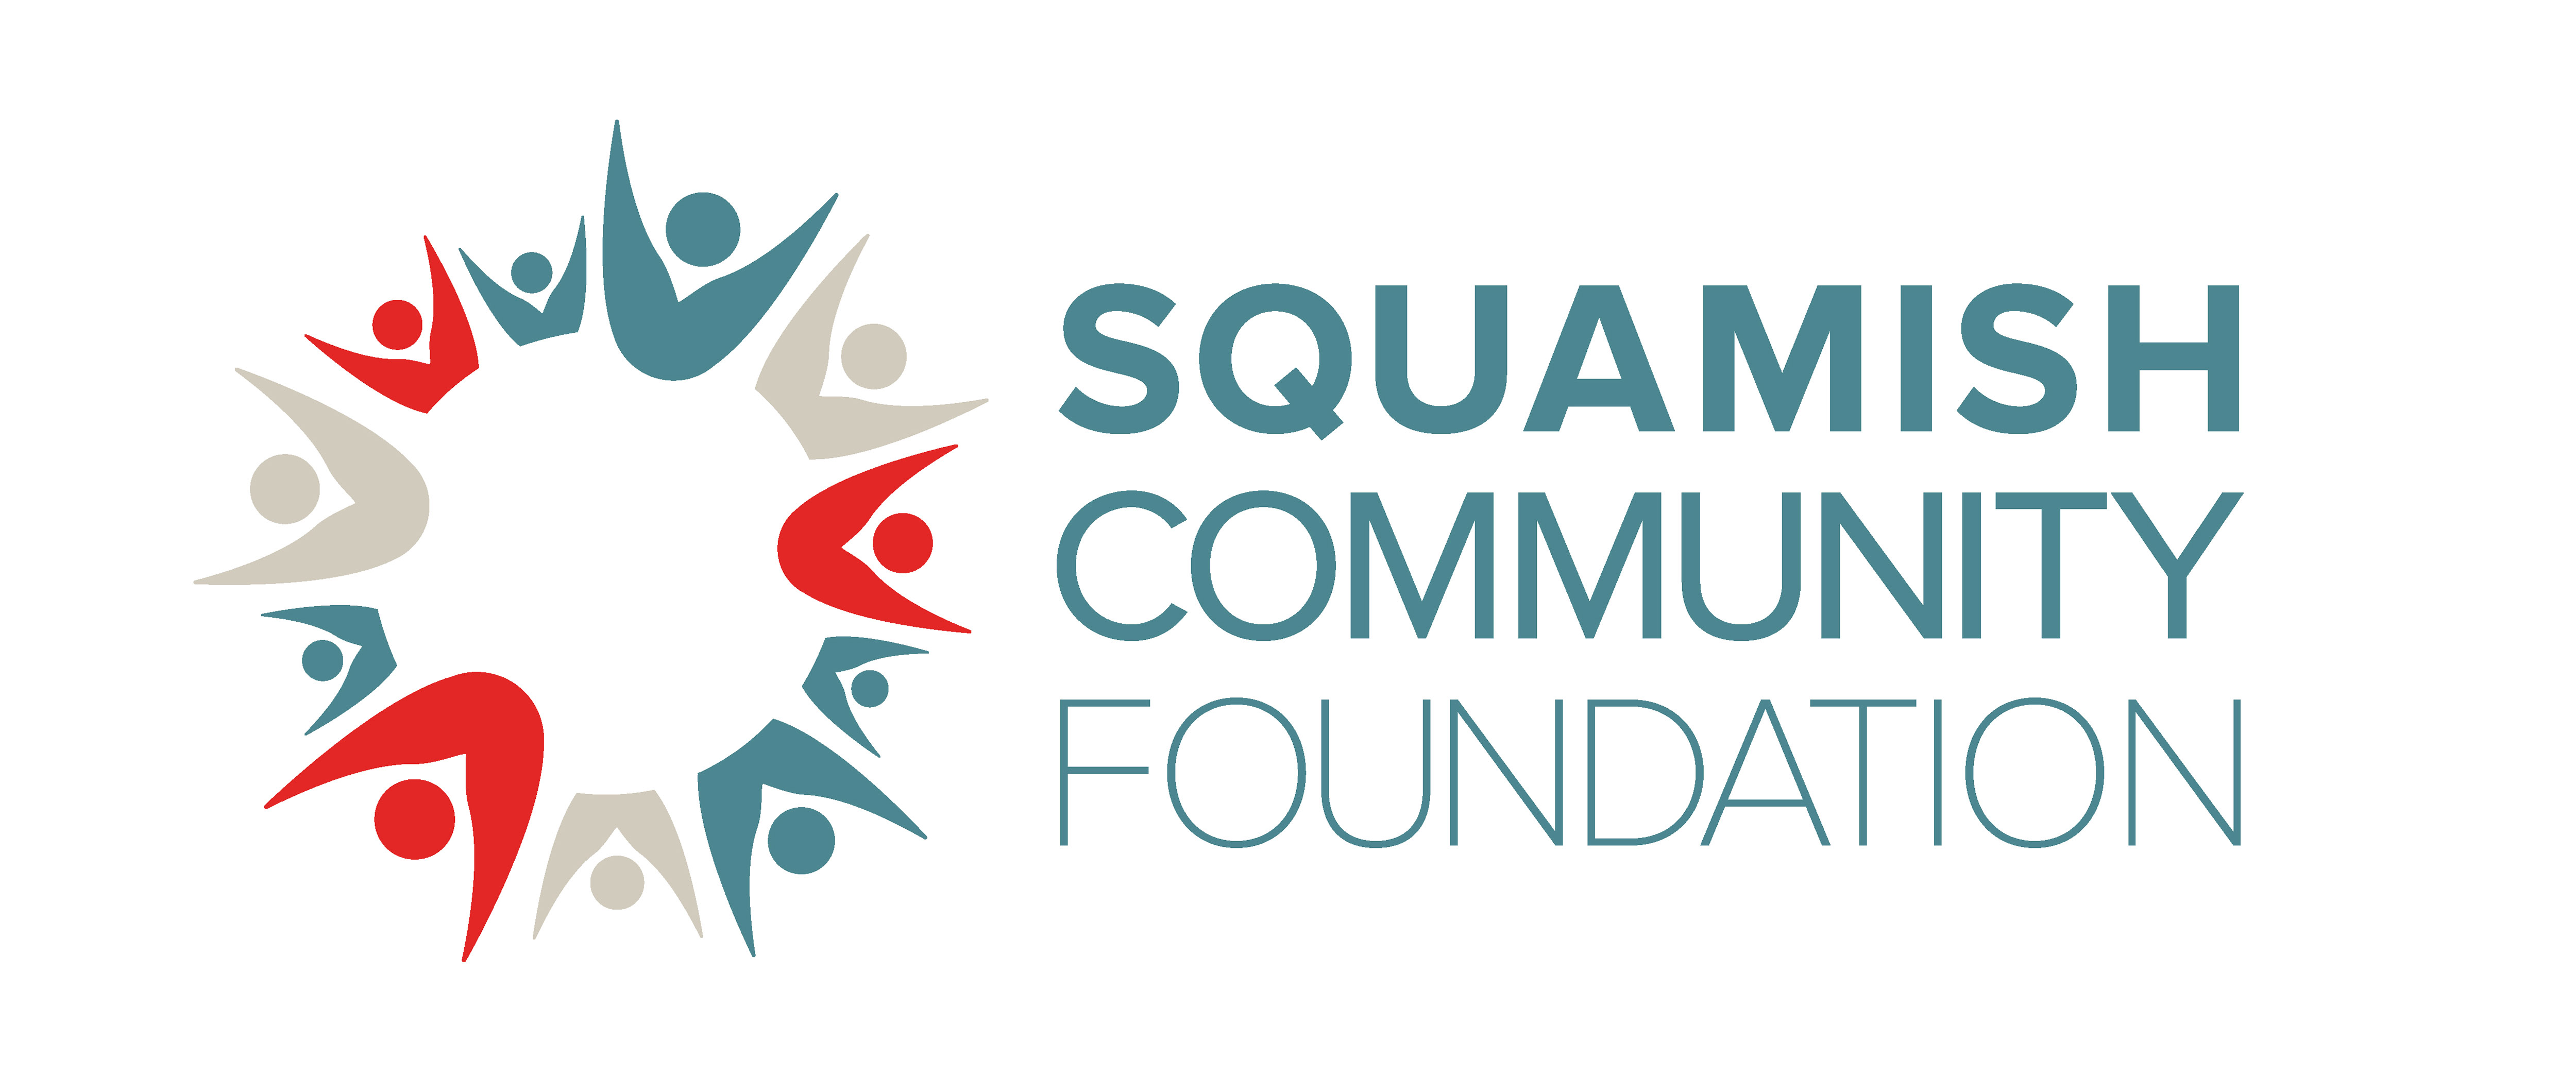 SQUAMISH COMMUNITY FOUNDATION logo